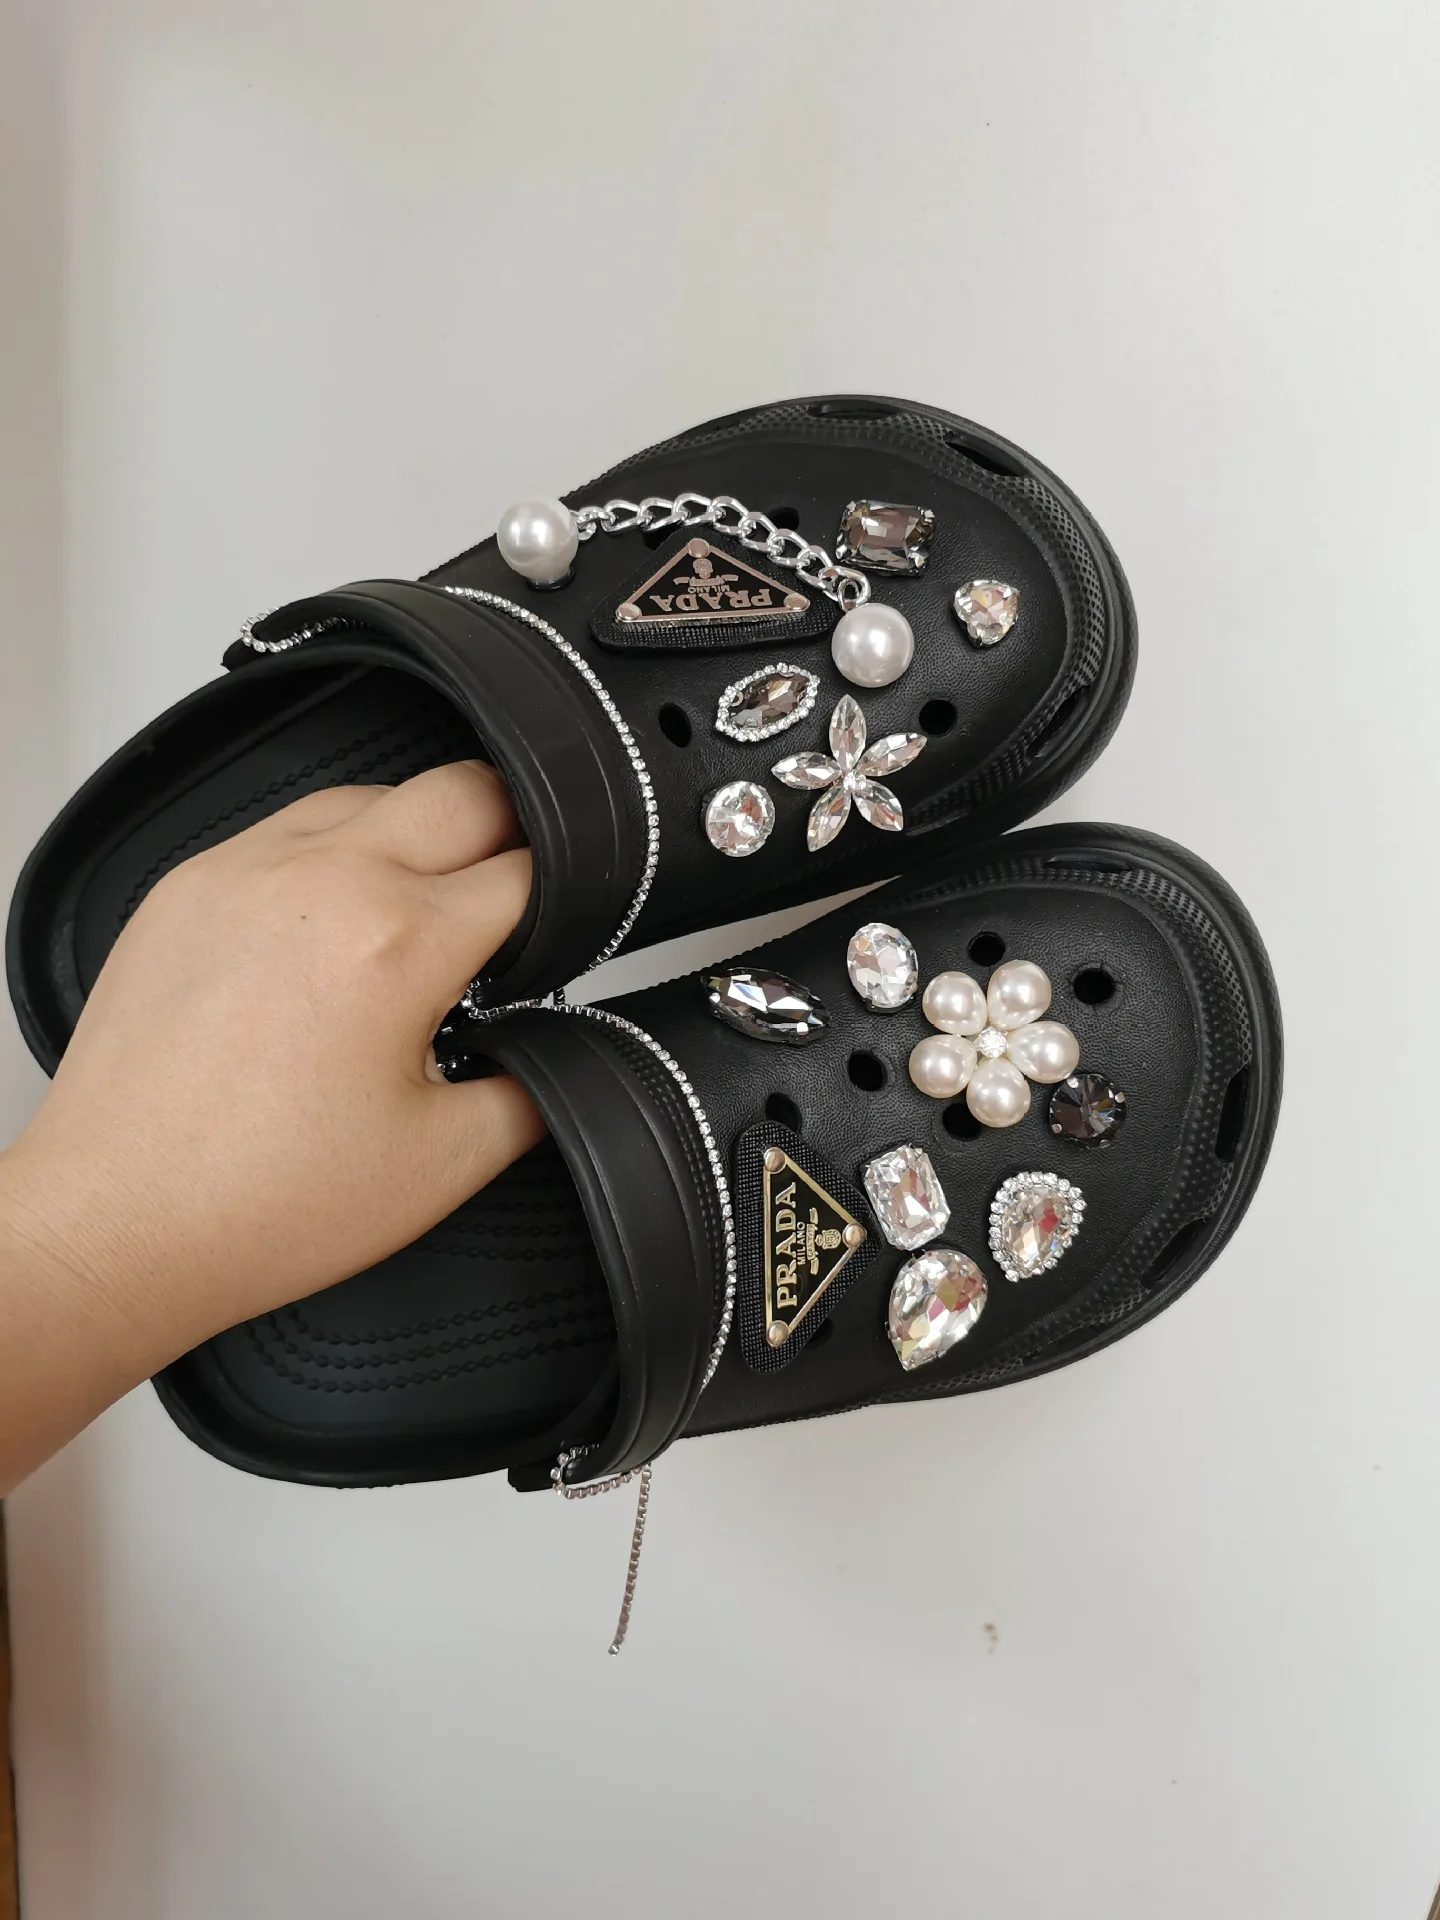 13PCS Cool Breloques pour Chaussures, Charmes de Chaussures Luxe avec  Chaîne en Métal, Breloques de Décoration de Chaussures à la Bling pour  Sandales